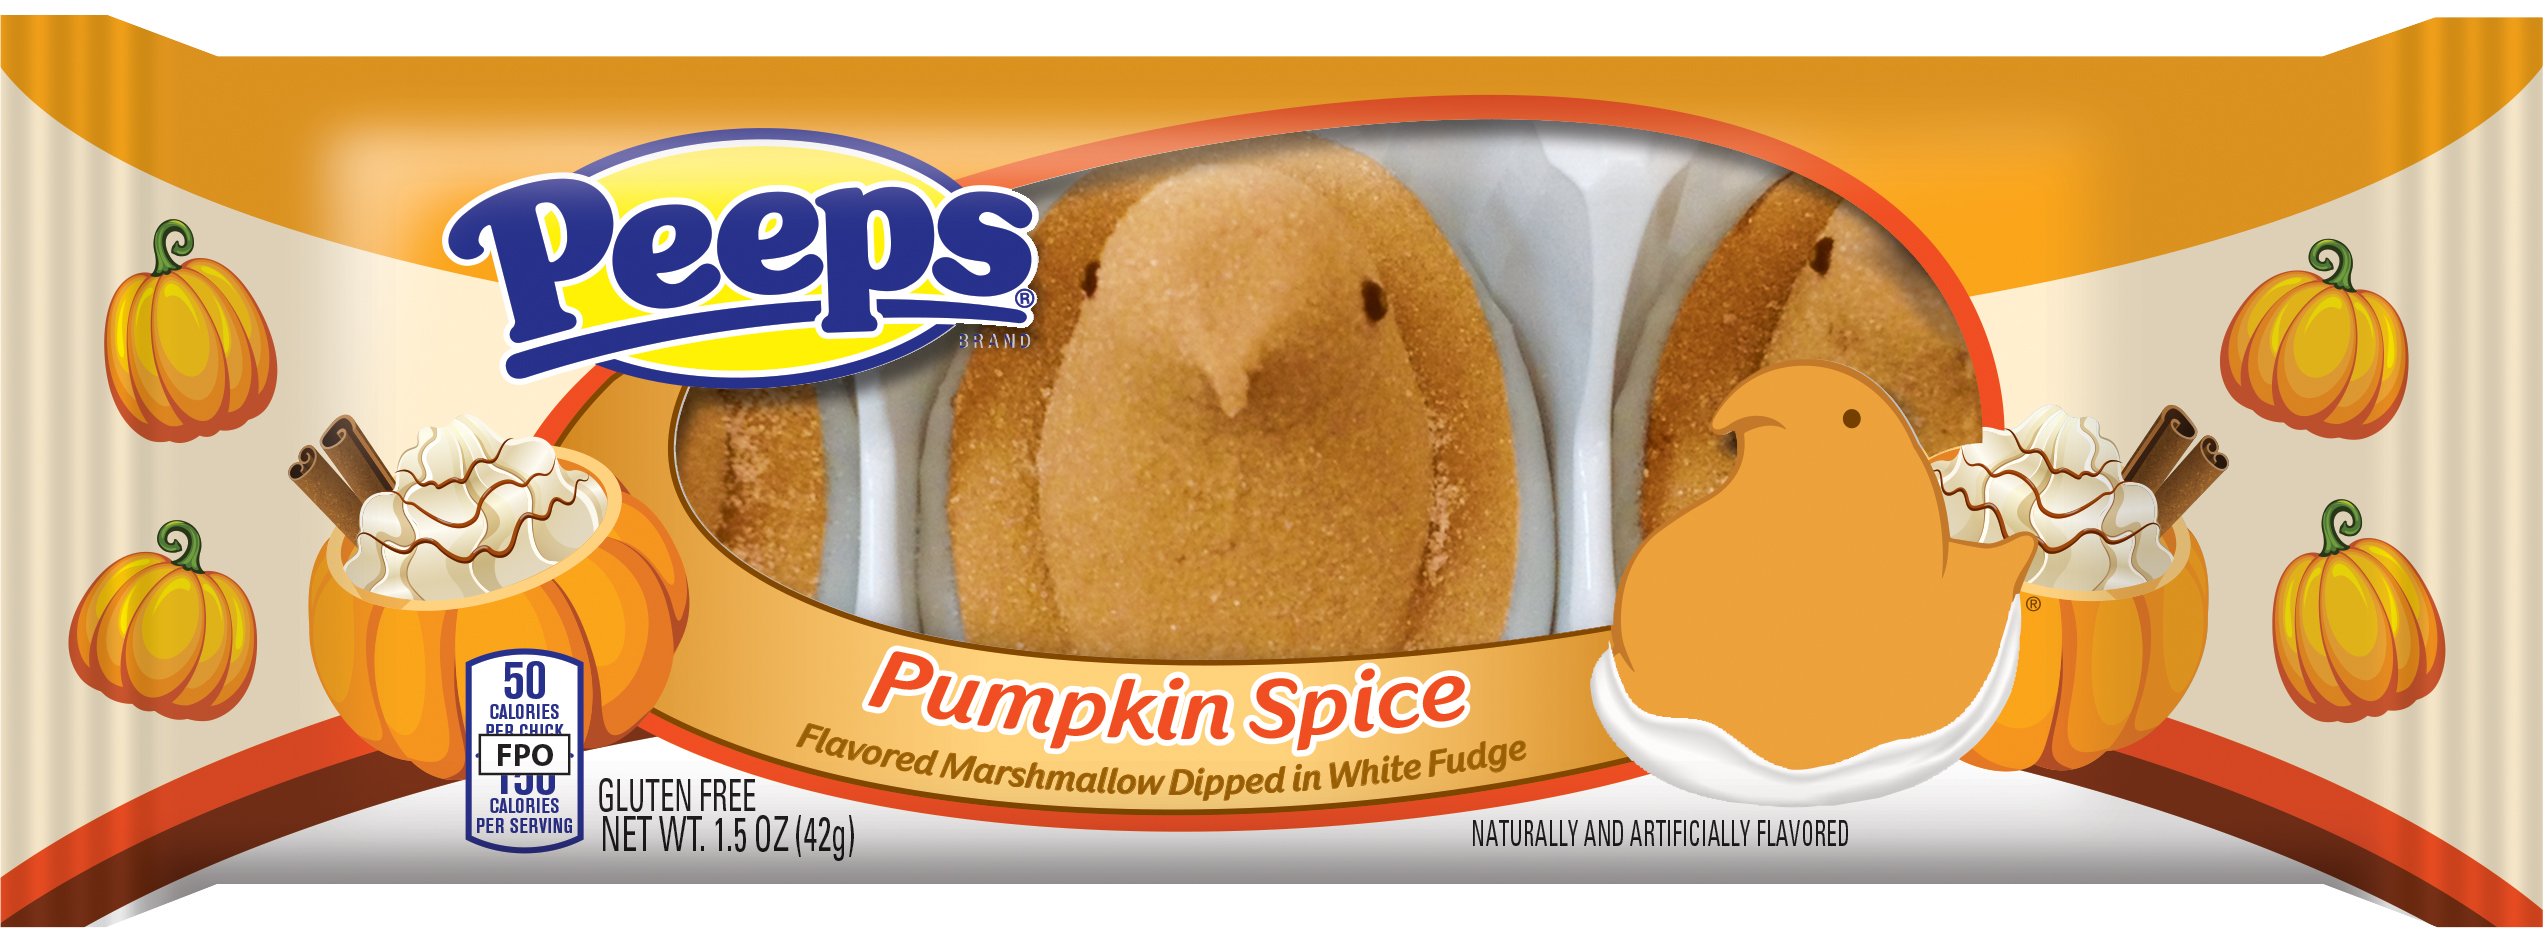 Pumpkin Spice Peeps